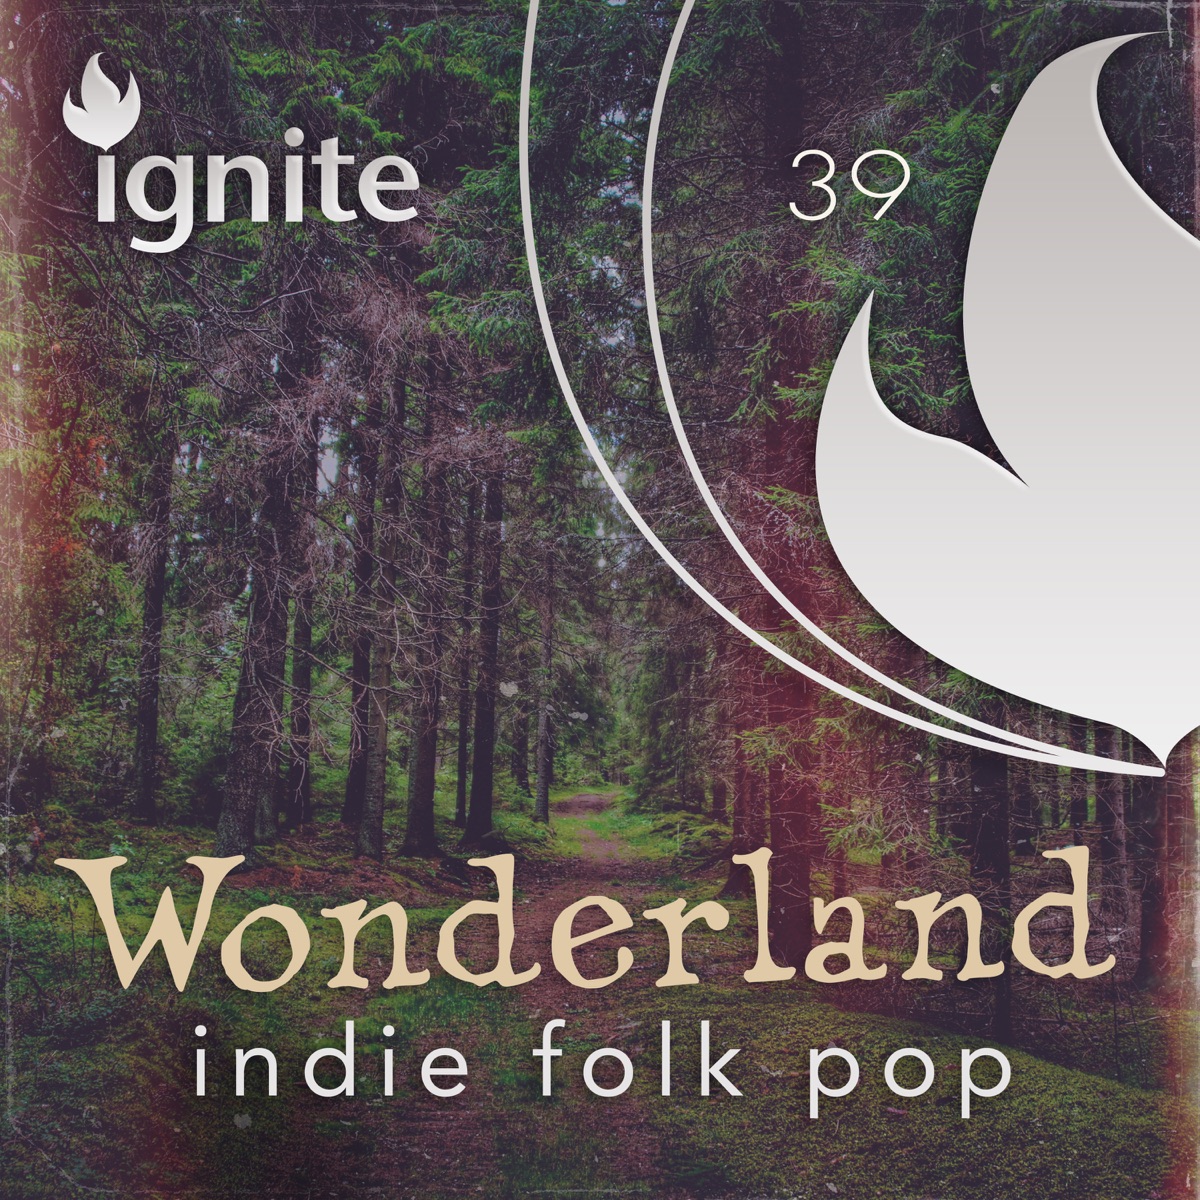 Wonderland Indie Folk Pop - Album by Justin King - Apple Music